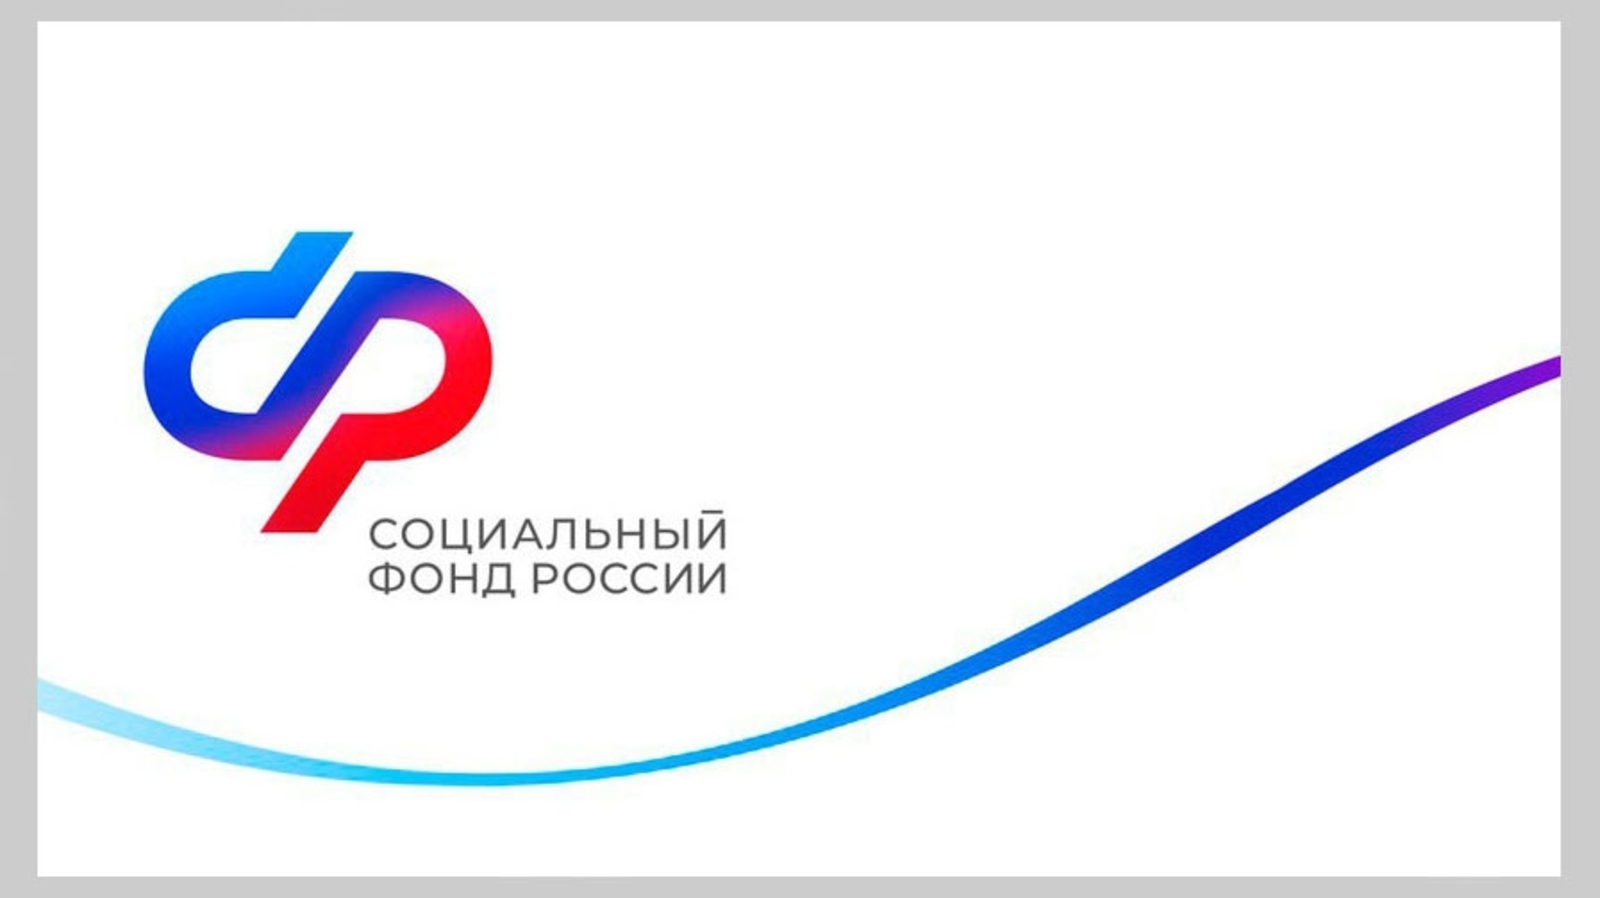 ОСФР по Республике Башкортостан компенсировало стоимость полиса ОСАГО более 160 гражданам с инвалидностью